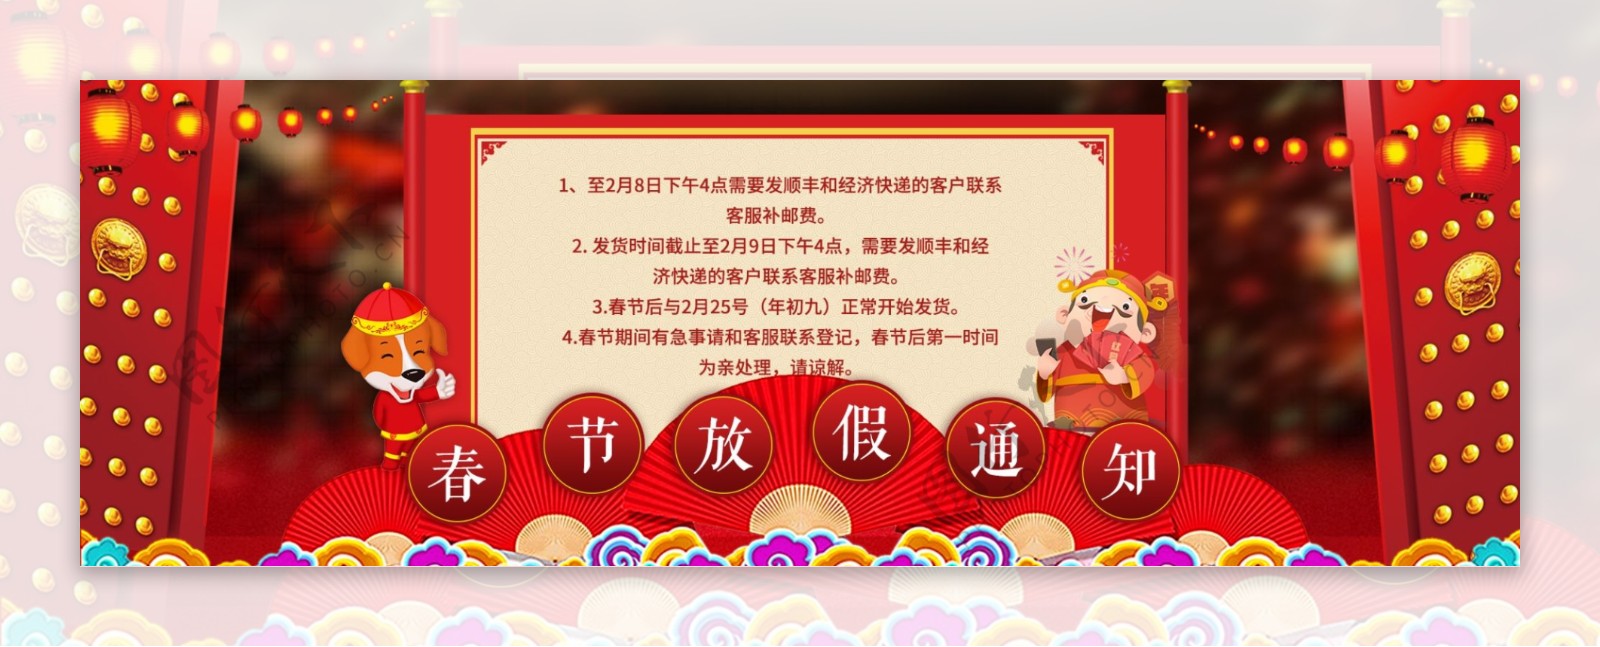 新年喜庆红色春节放假通知海报设计模版